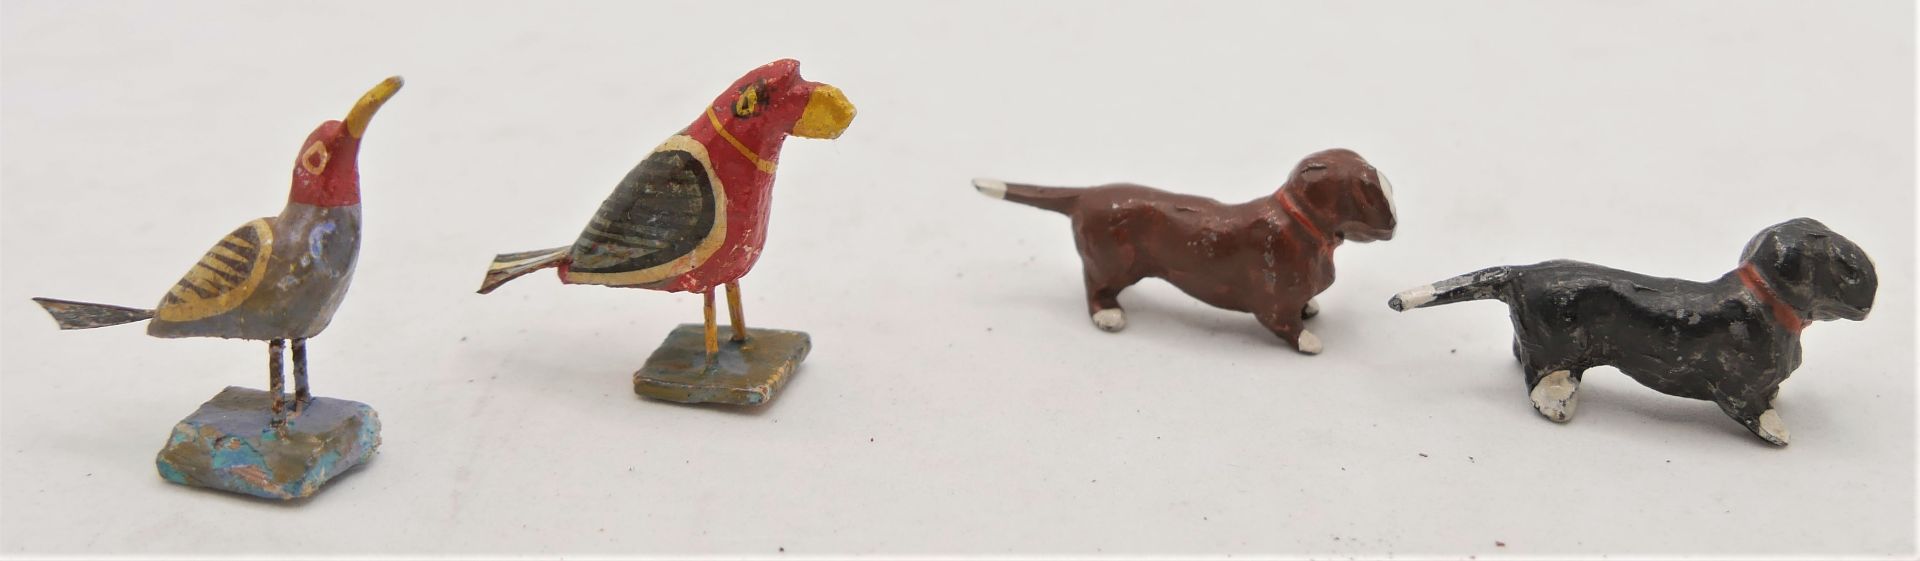 4 Miniatur Tiere für die Puppenstube, bestehend aus 2 Vögel aus Holz und 2 Hunde aus Zinn - Image 2 of 2